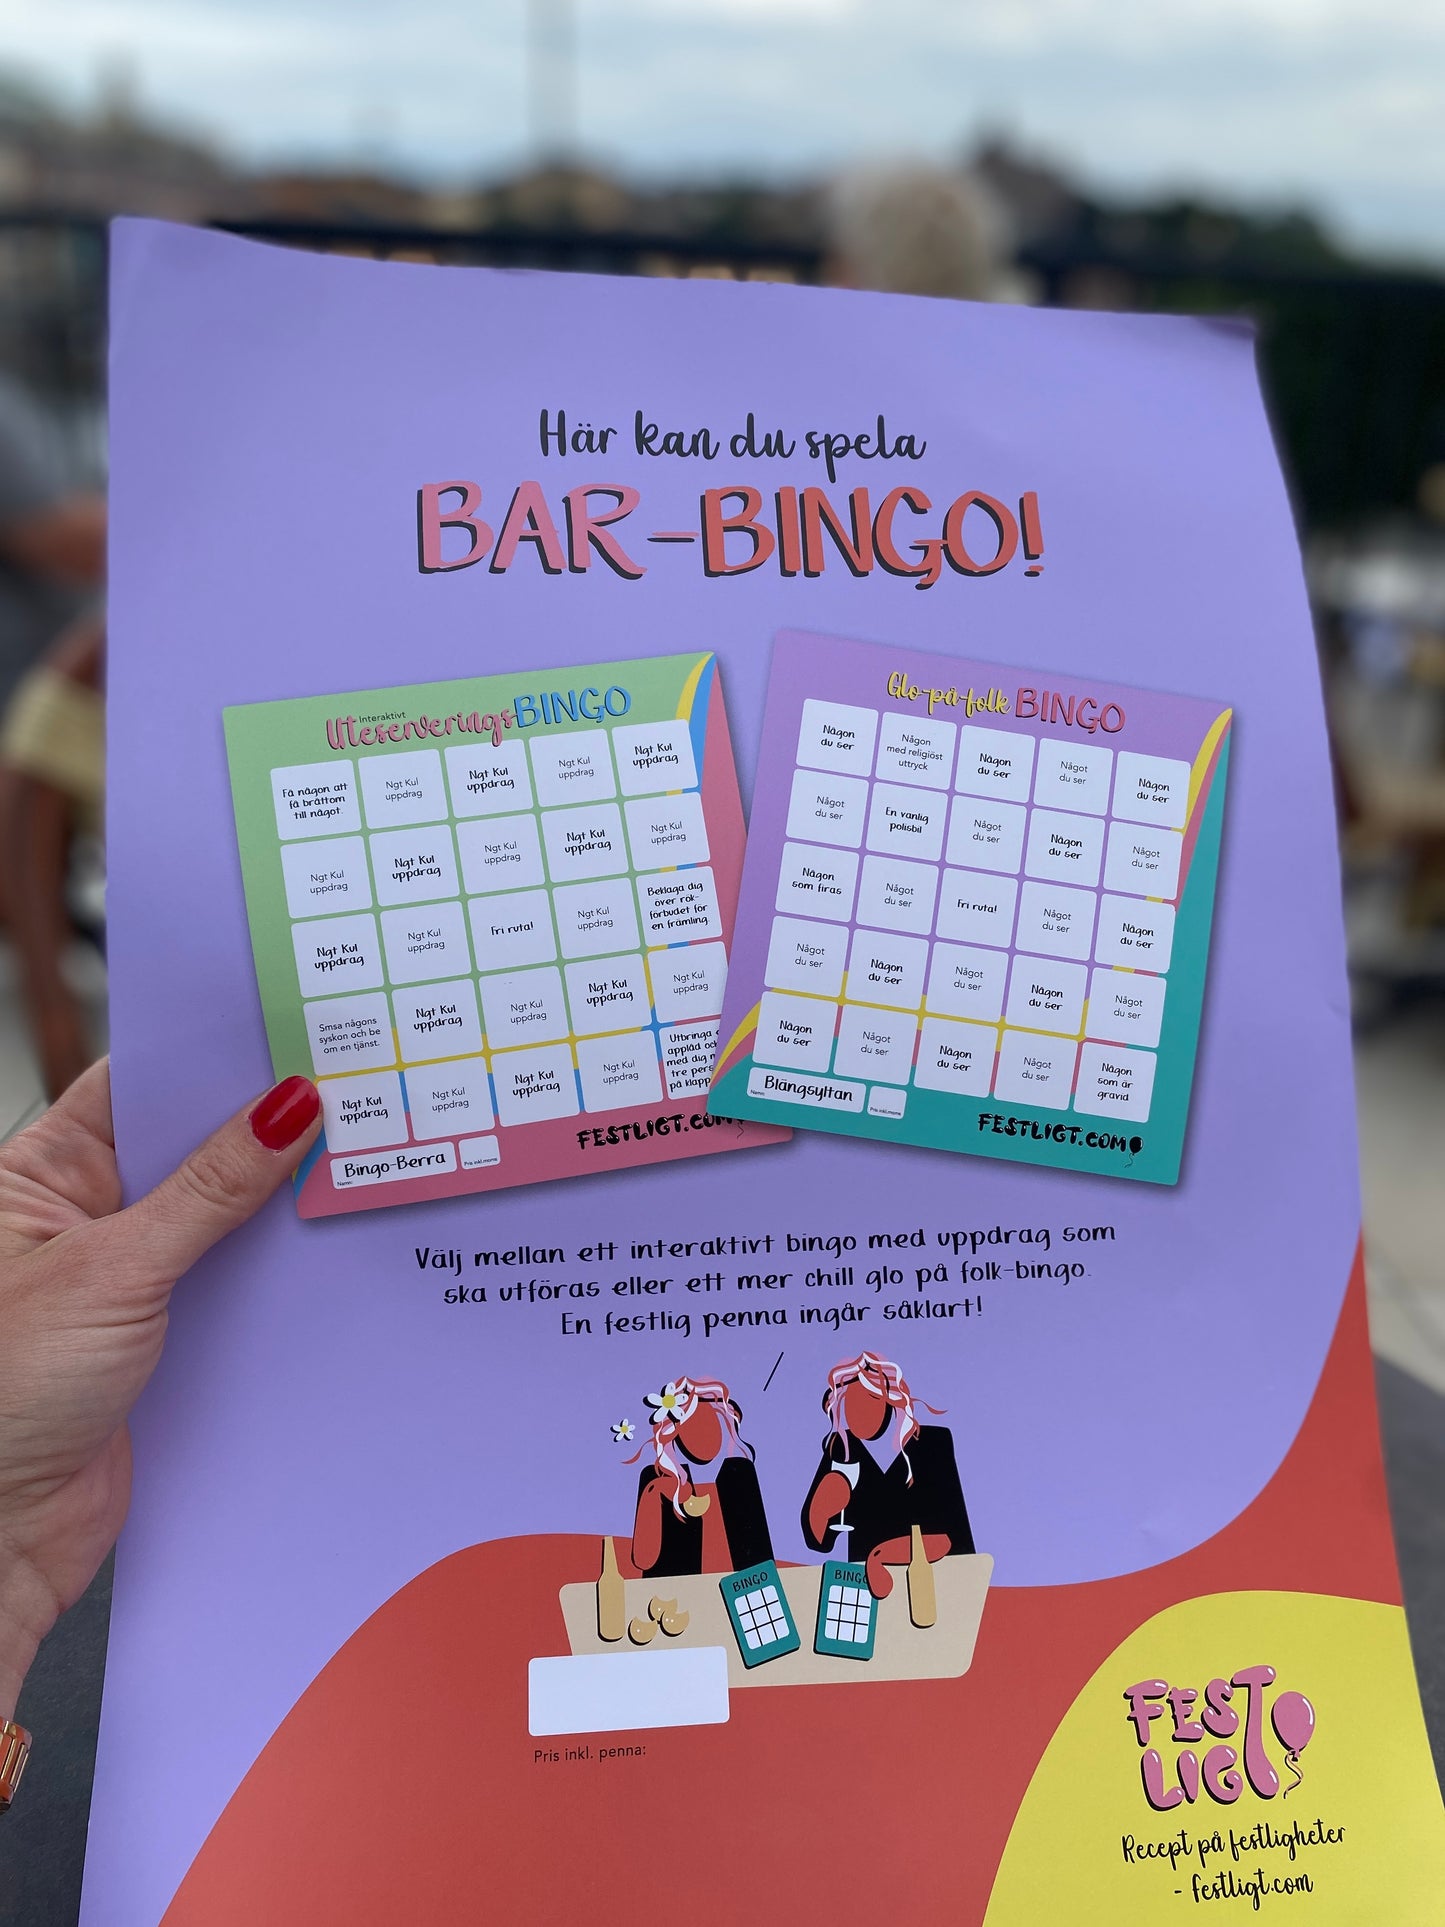 Glo på folk-bingo! 4-pack!